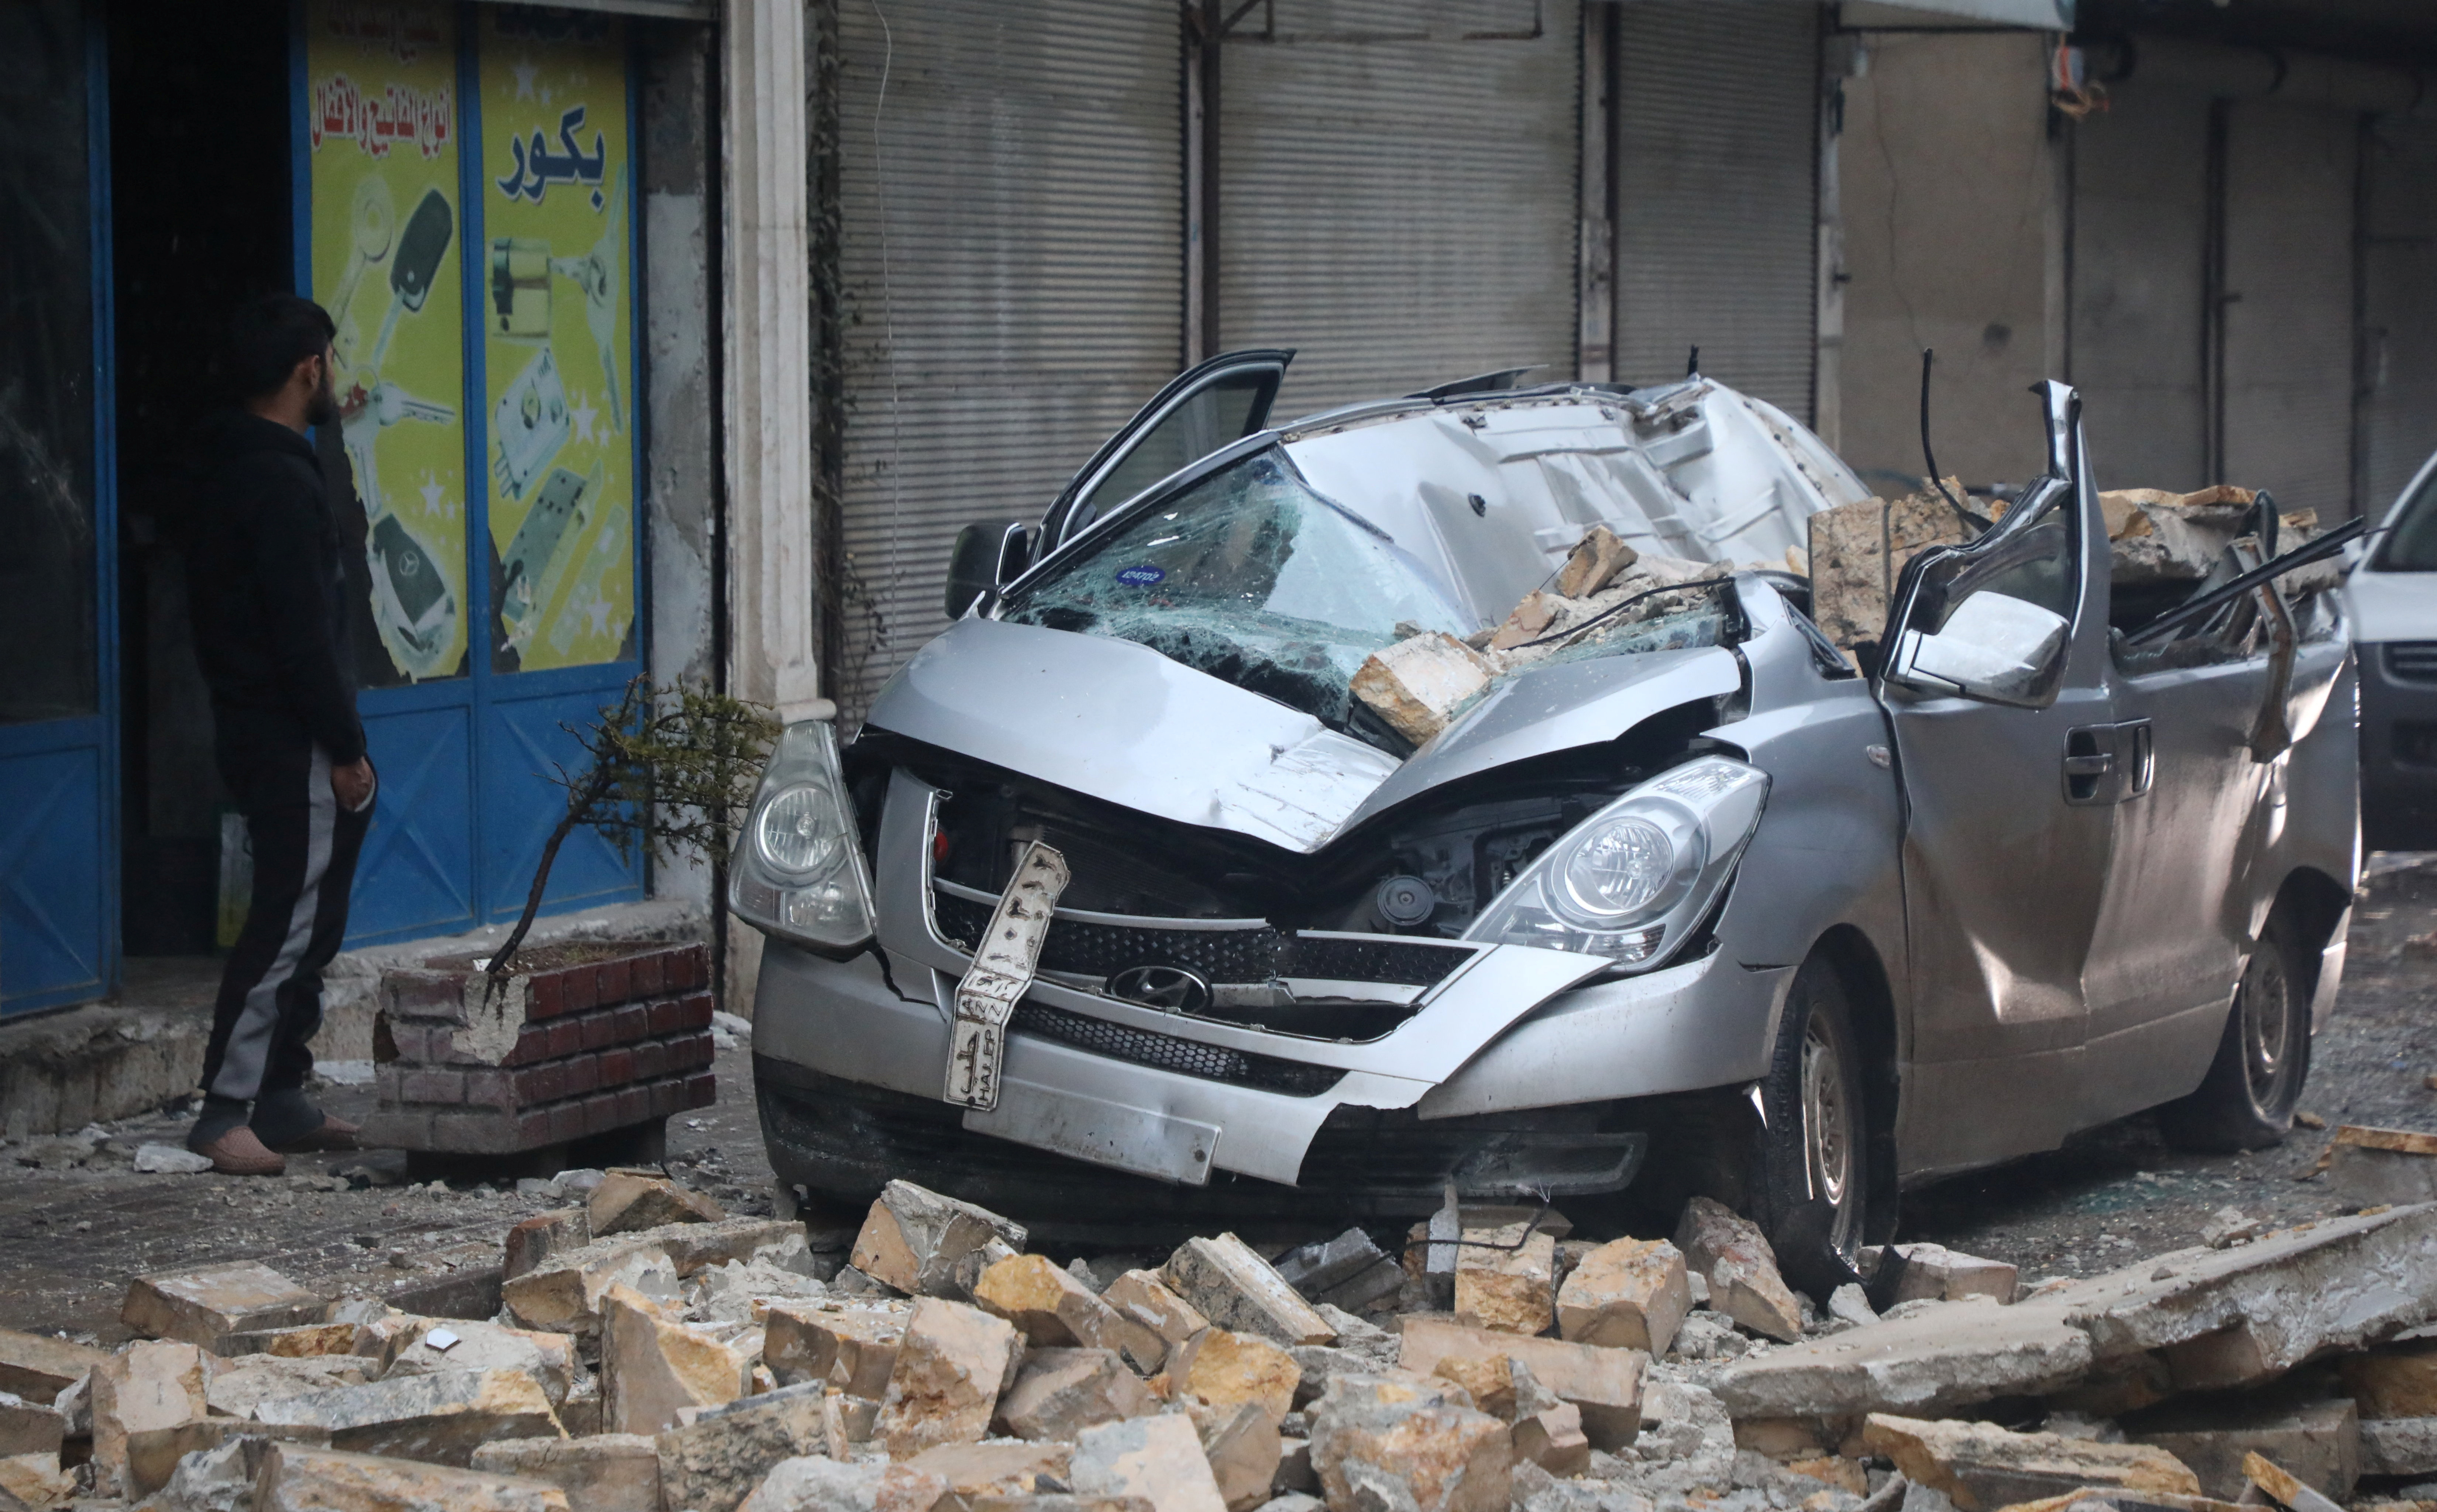 Un hombre parado cerca de un vehículo dañado, luego de un terremoto, en Azaz, Siria, controlada por los rebeldes.
